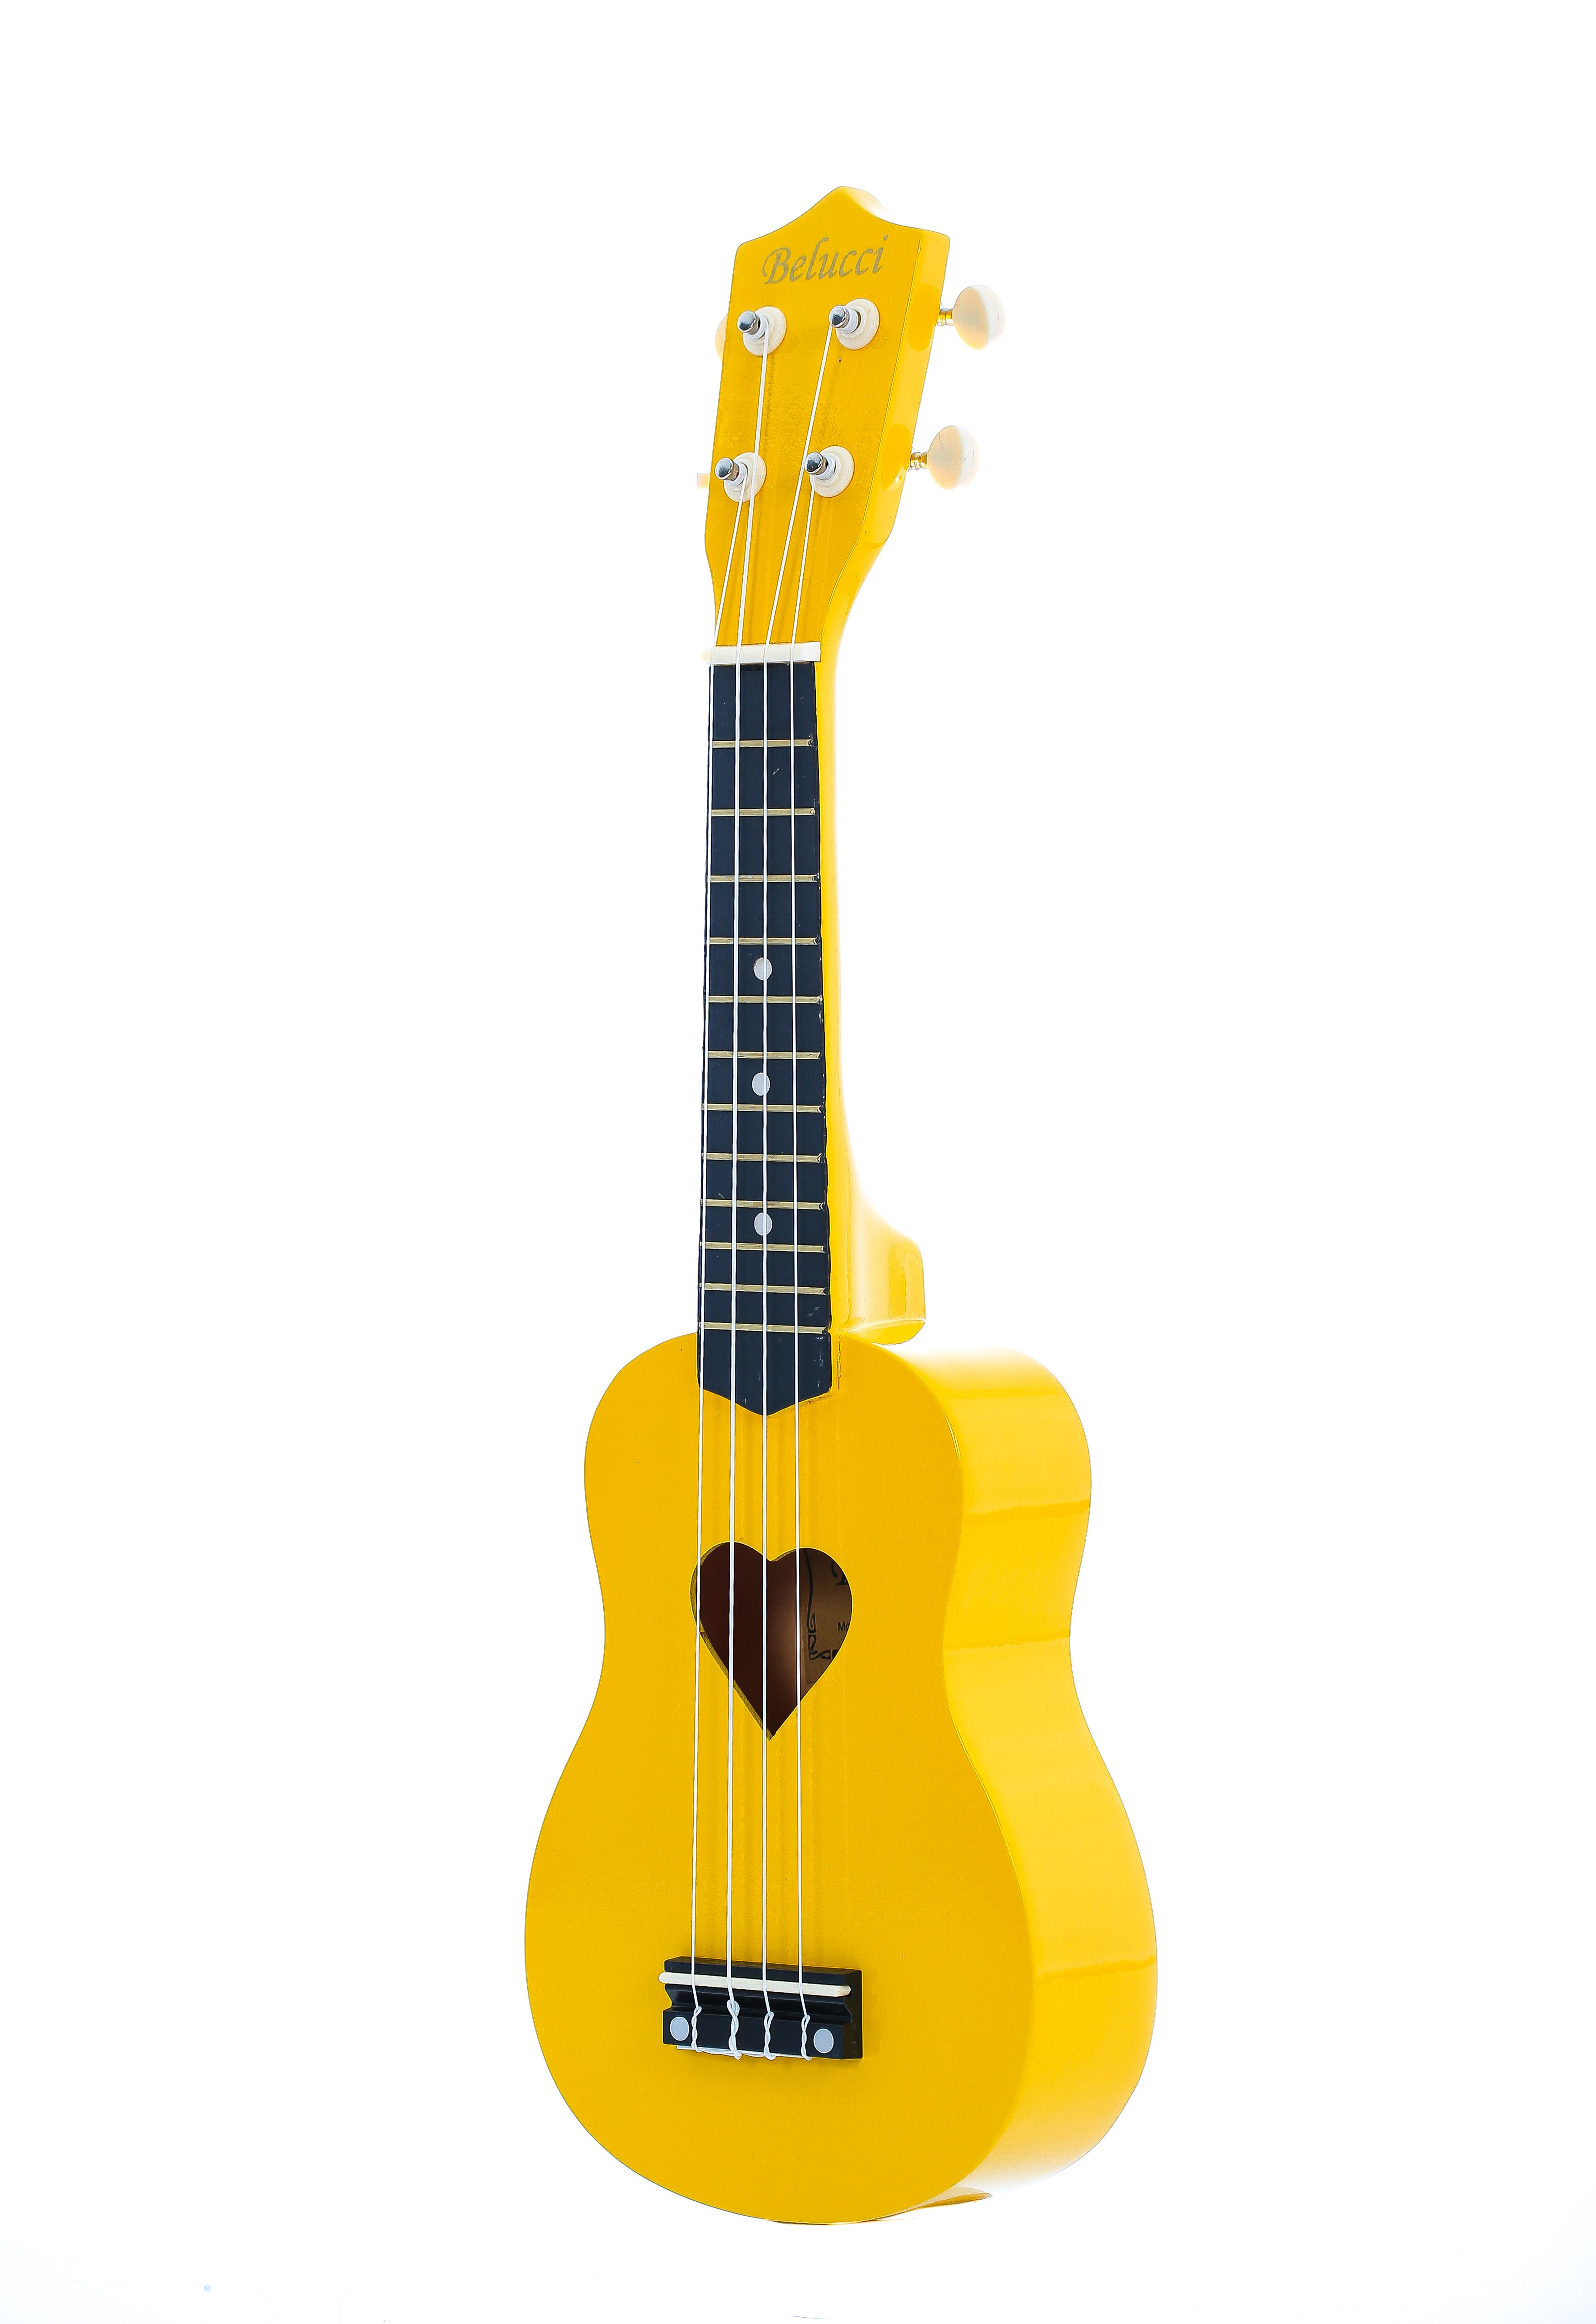 Детальная картинка товара Belucci B-21 Heart Yellow в магазине Музыкальная Тема